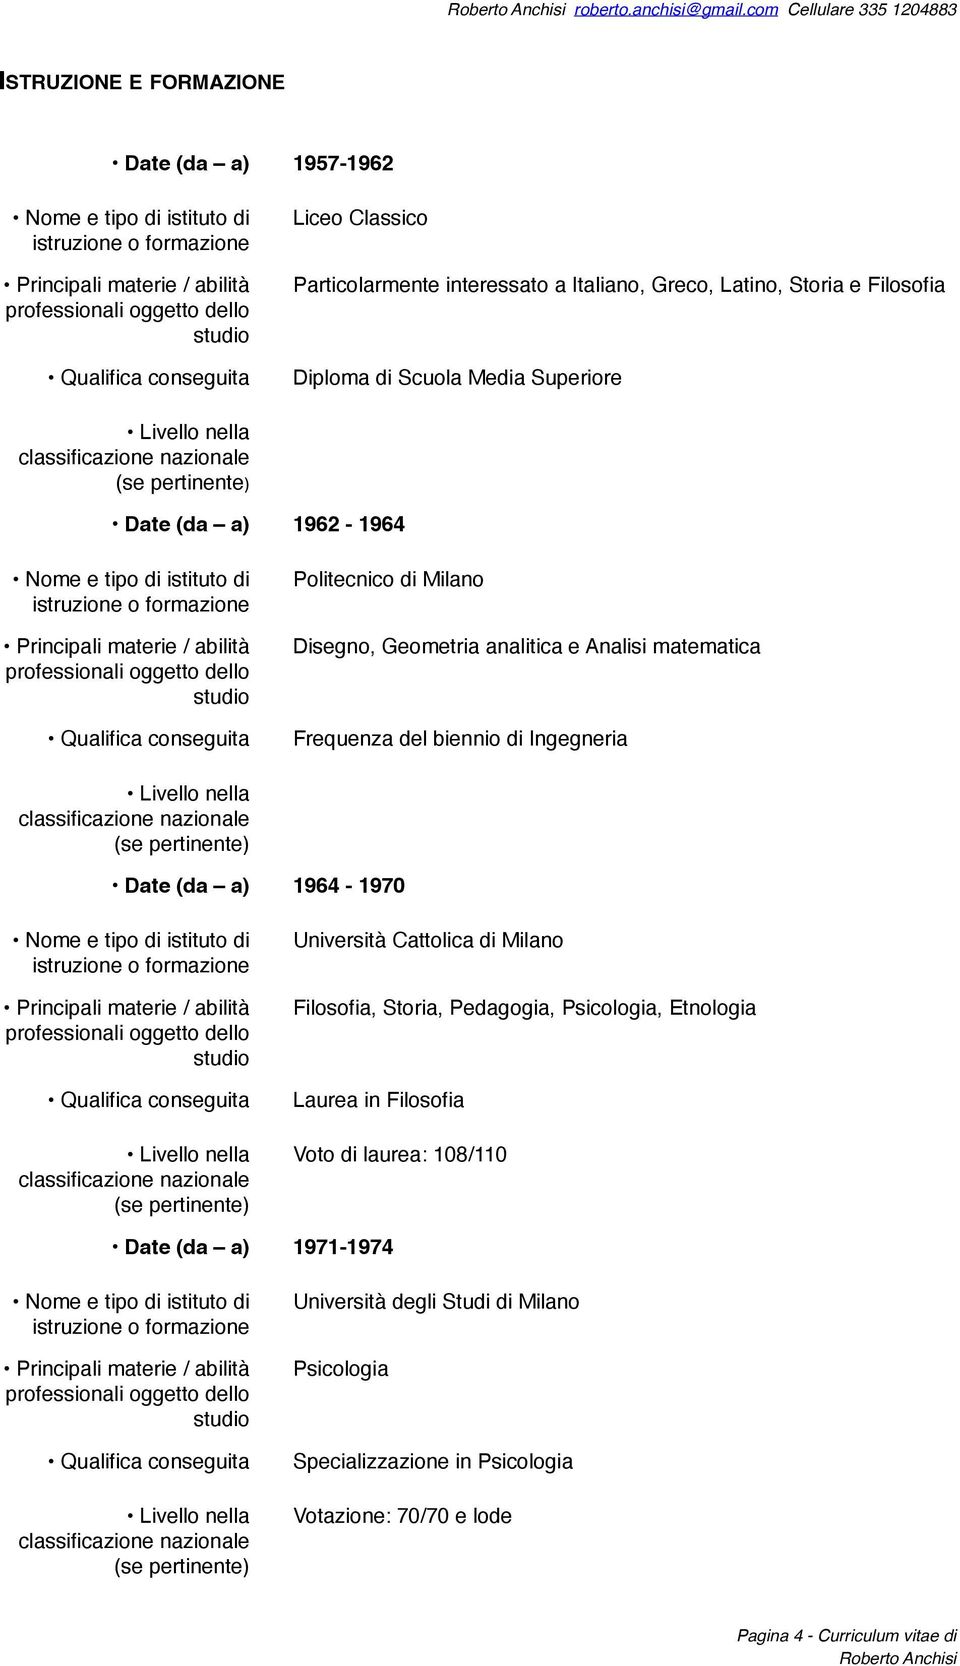 Diploma di Scuola Media Superiore Date (da a) 1962-1964 Politecnico di Milano Disegno, Geometria analitica e Analisi matematica Frequenza del biennio di